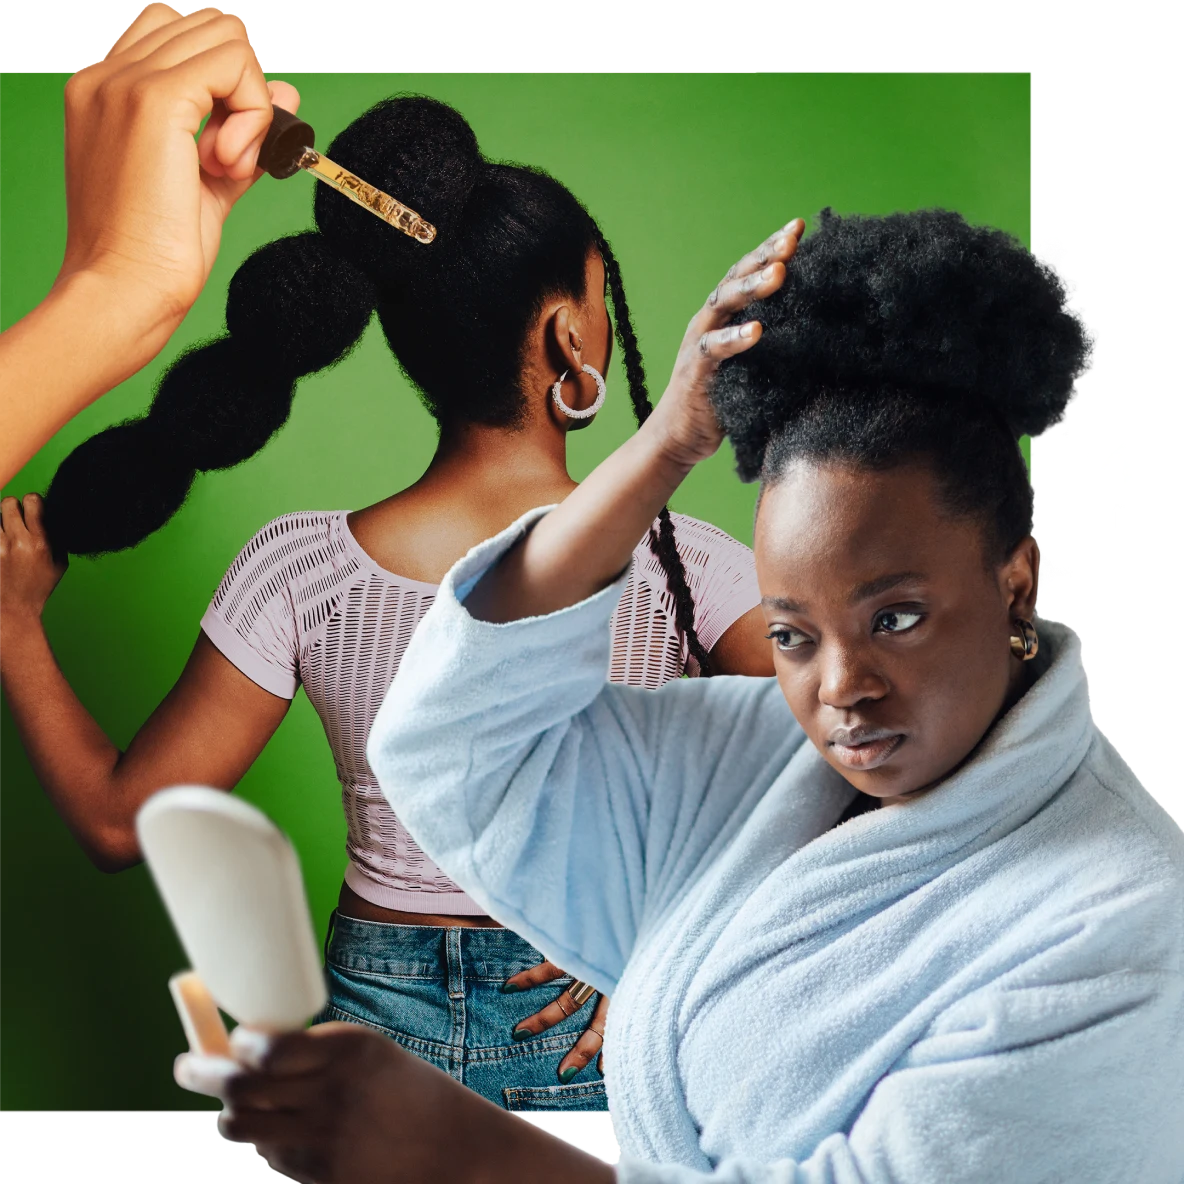 À droite, une femme noire en robe de chambre bleu clair se regarde dans un miroir à main et touche ses cheveux au naturel. À gauche, une main avec un compte-gouttes. En arrière-plan, la femme noire avec un tee-shirt rose et un jean tient le bas de sa queue de cheval volumineuse.
